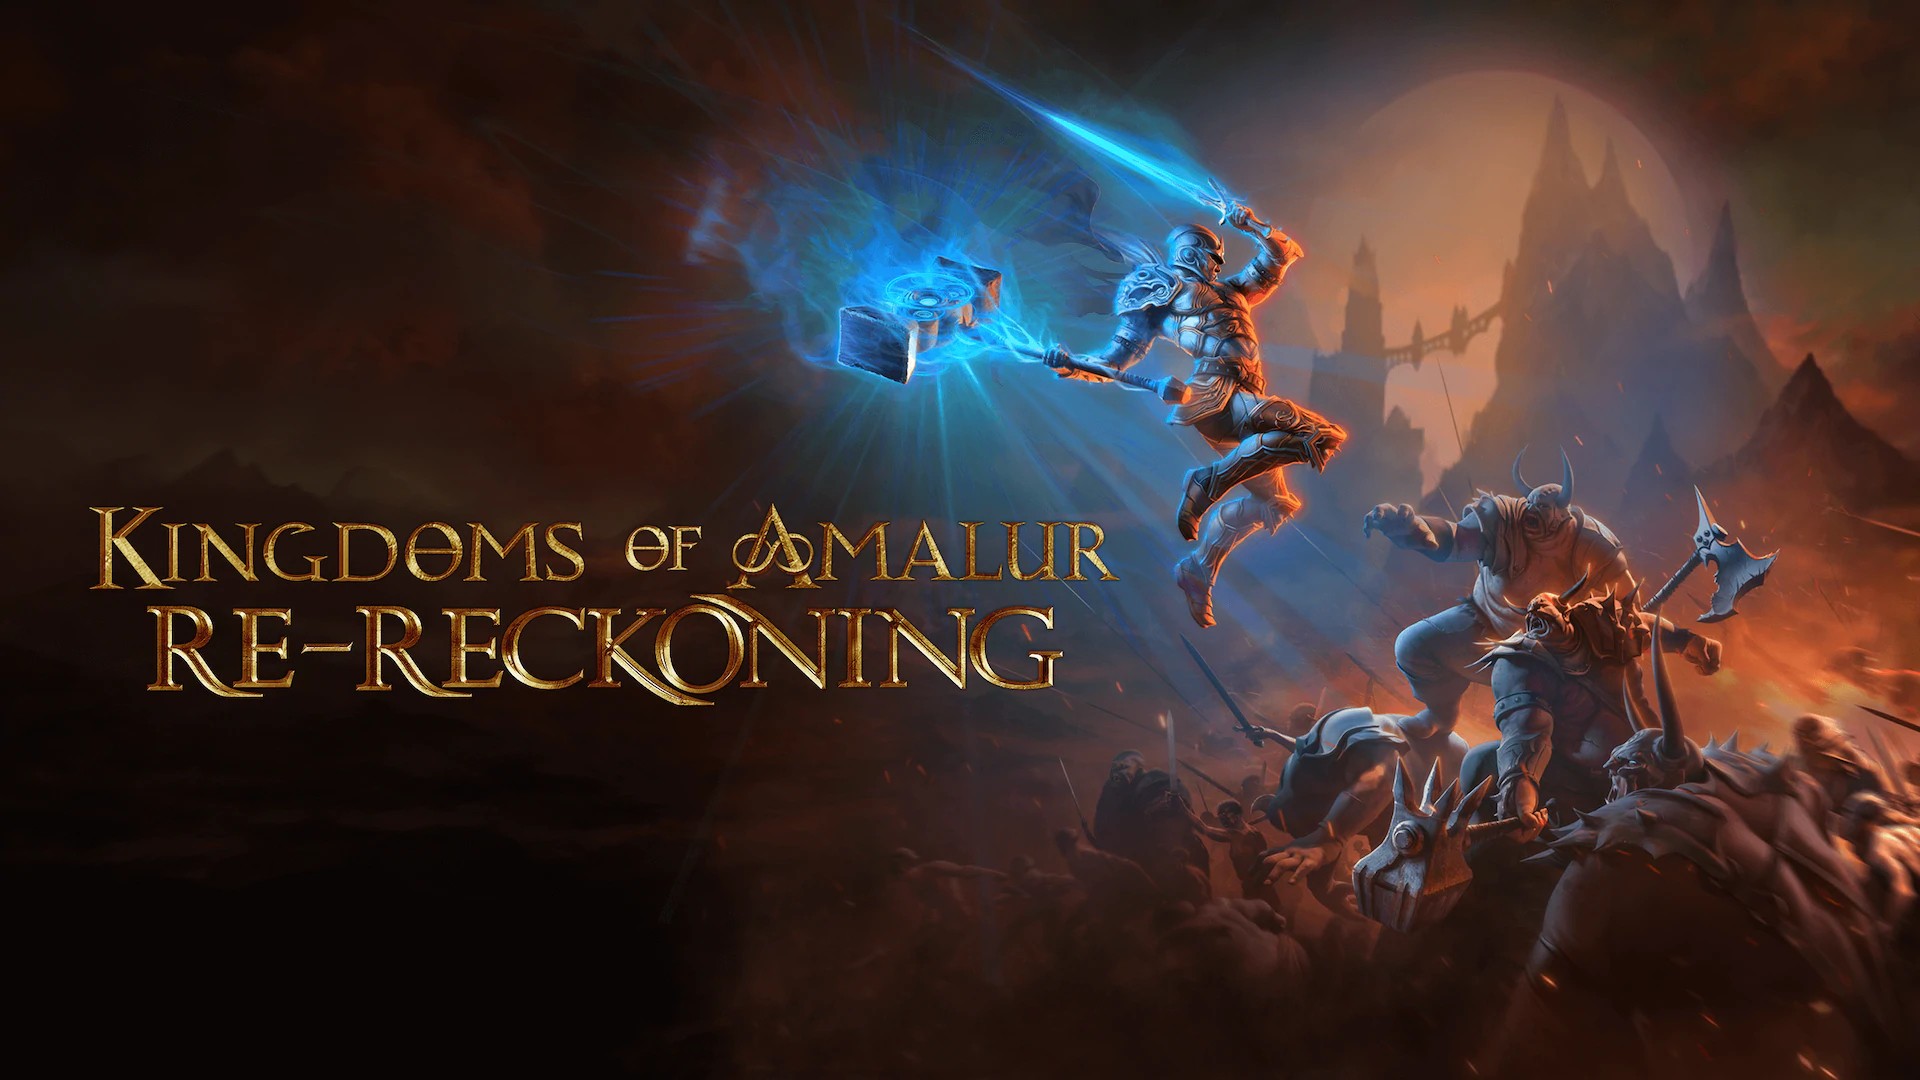 kingdoms of amalur re reckoning ps4 download free